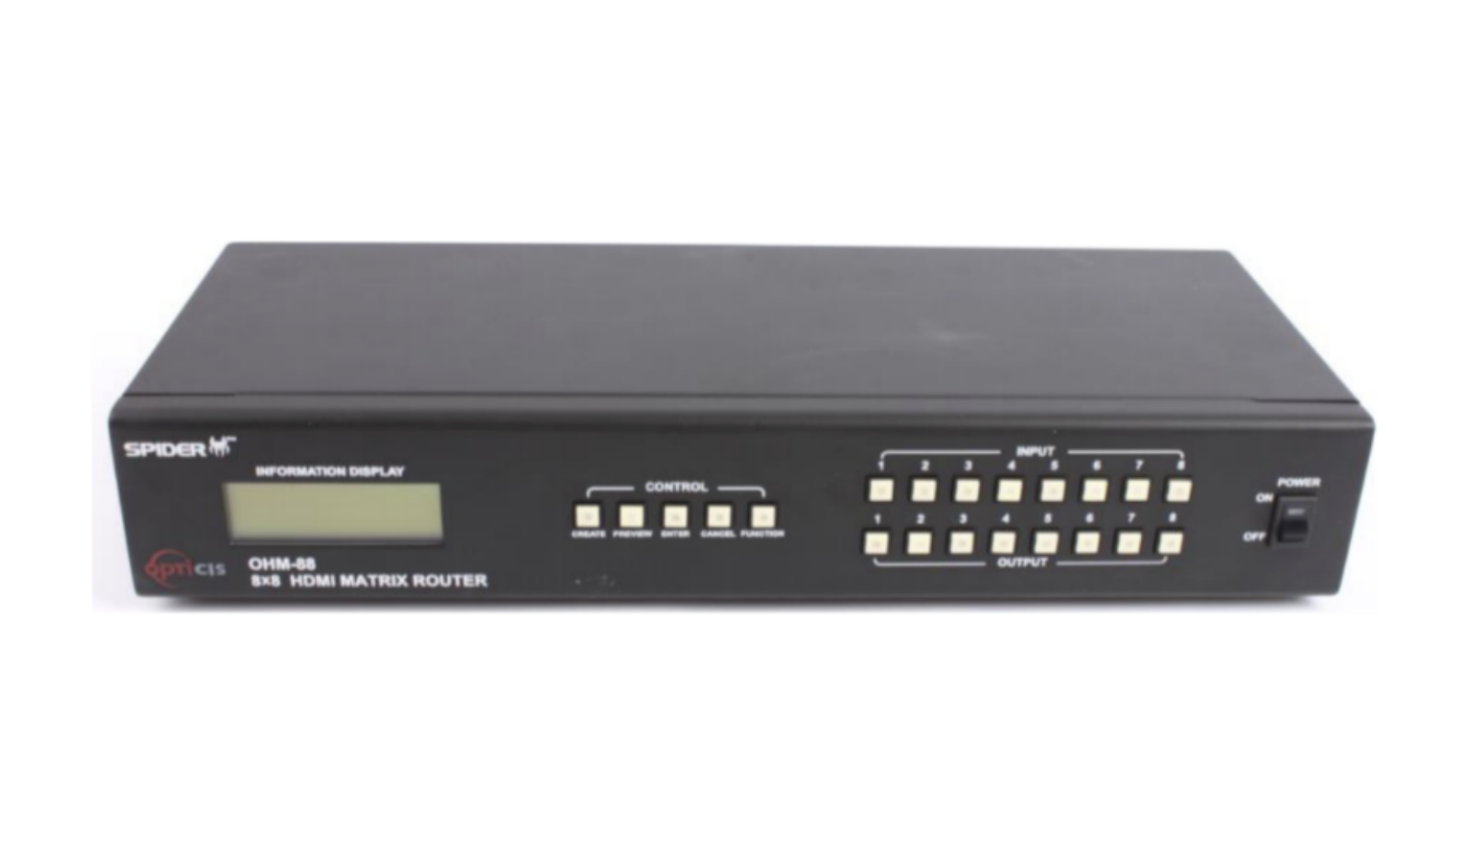 OHM-88; 8X8 HDMI MATRIX SWITCH  